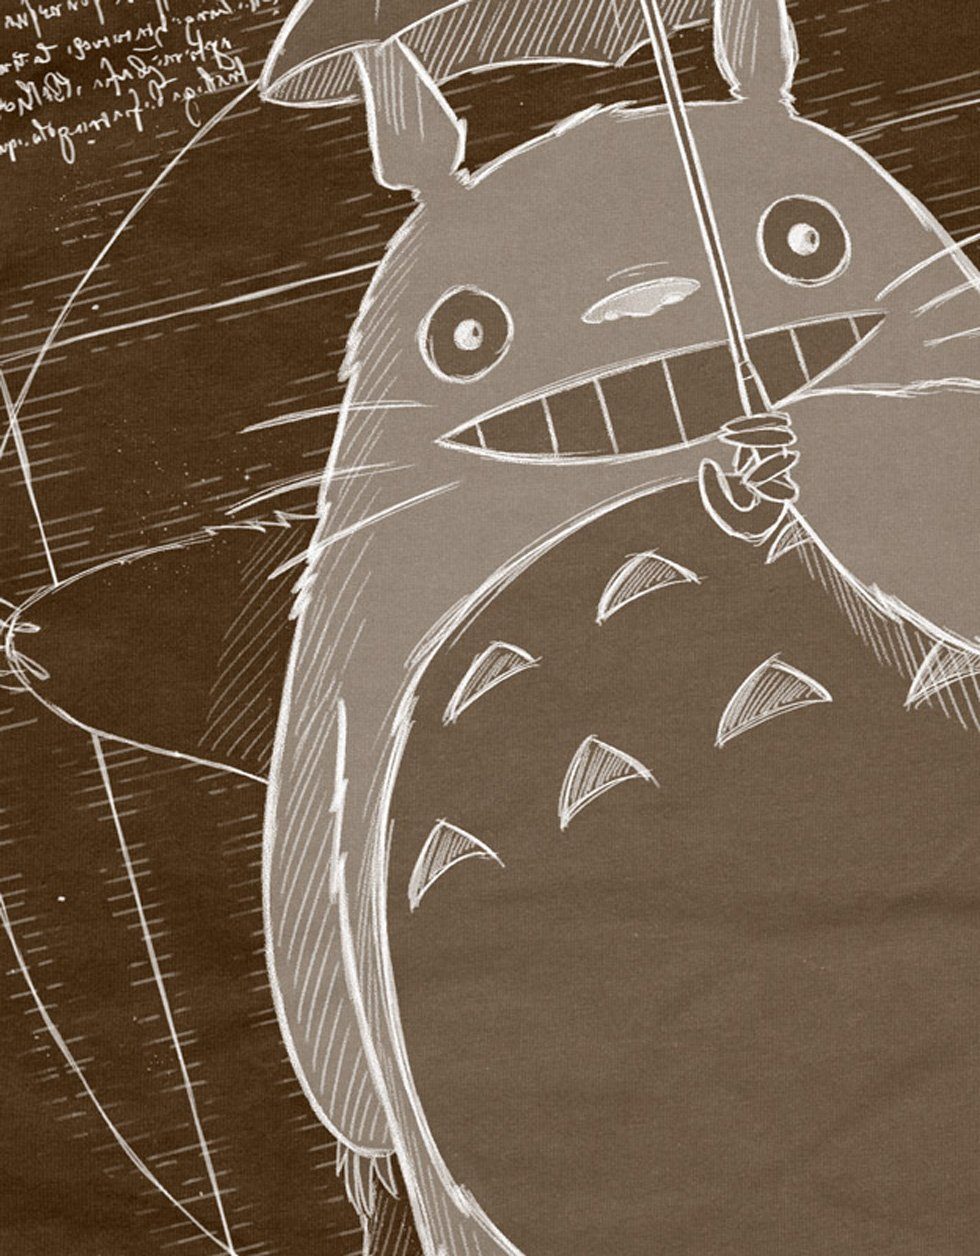 anime no nachbar tonari Herren Print-Shirt Vitruvianischer T-Shirt style3 Totoro braun mein neko